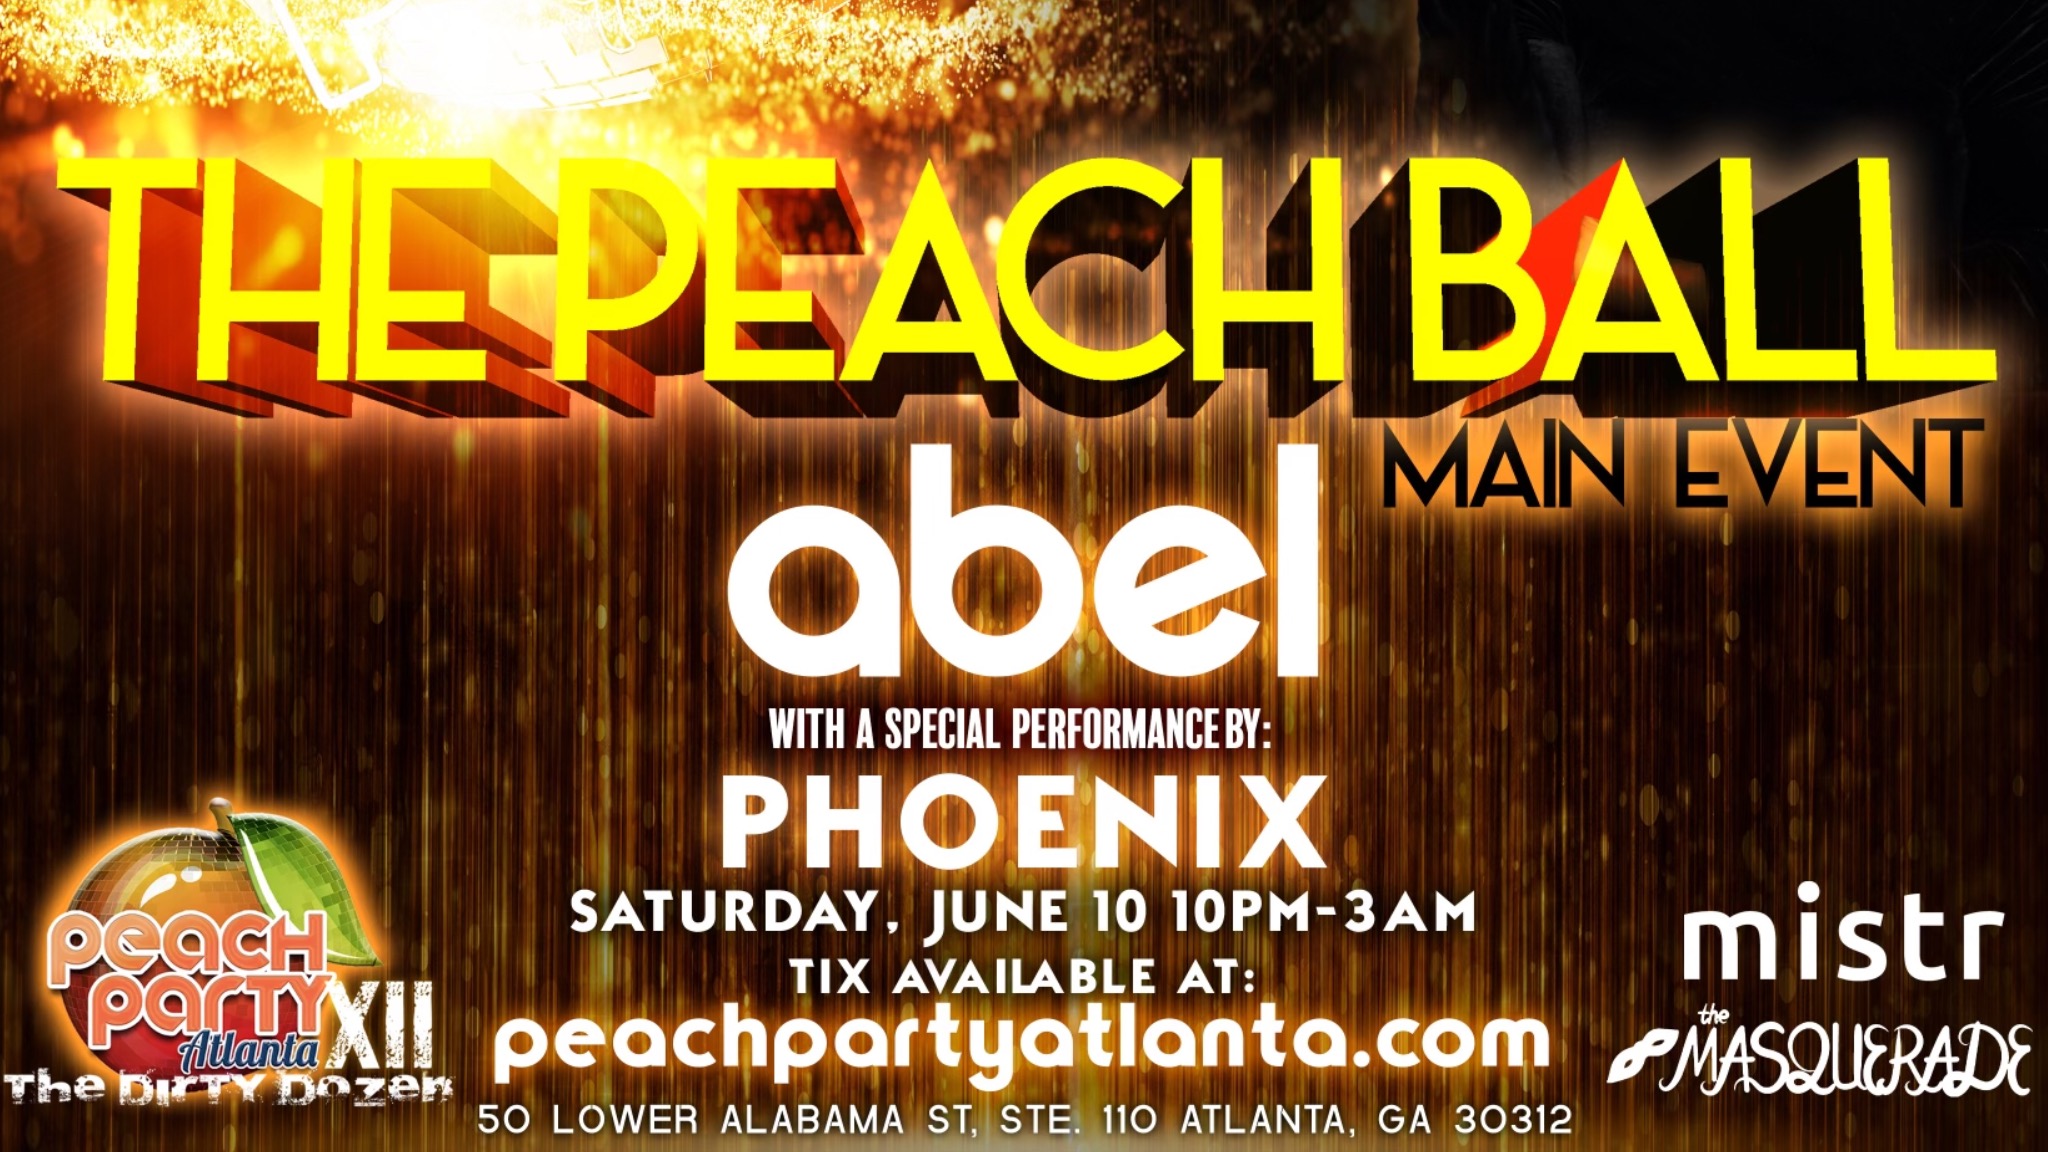 Peach Party Atlanta